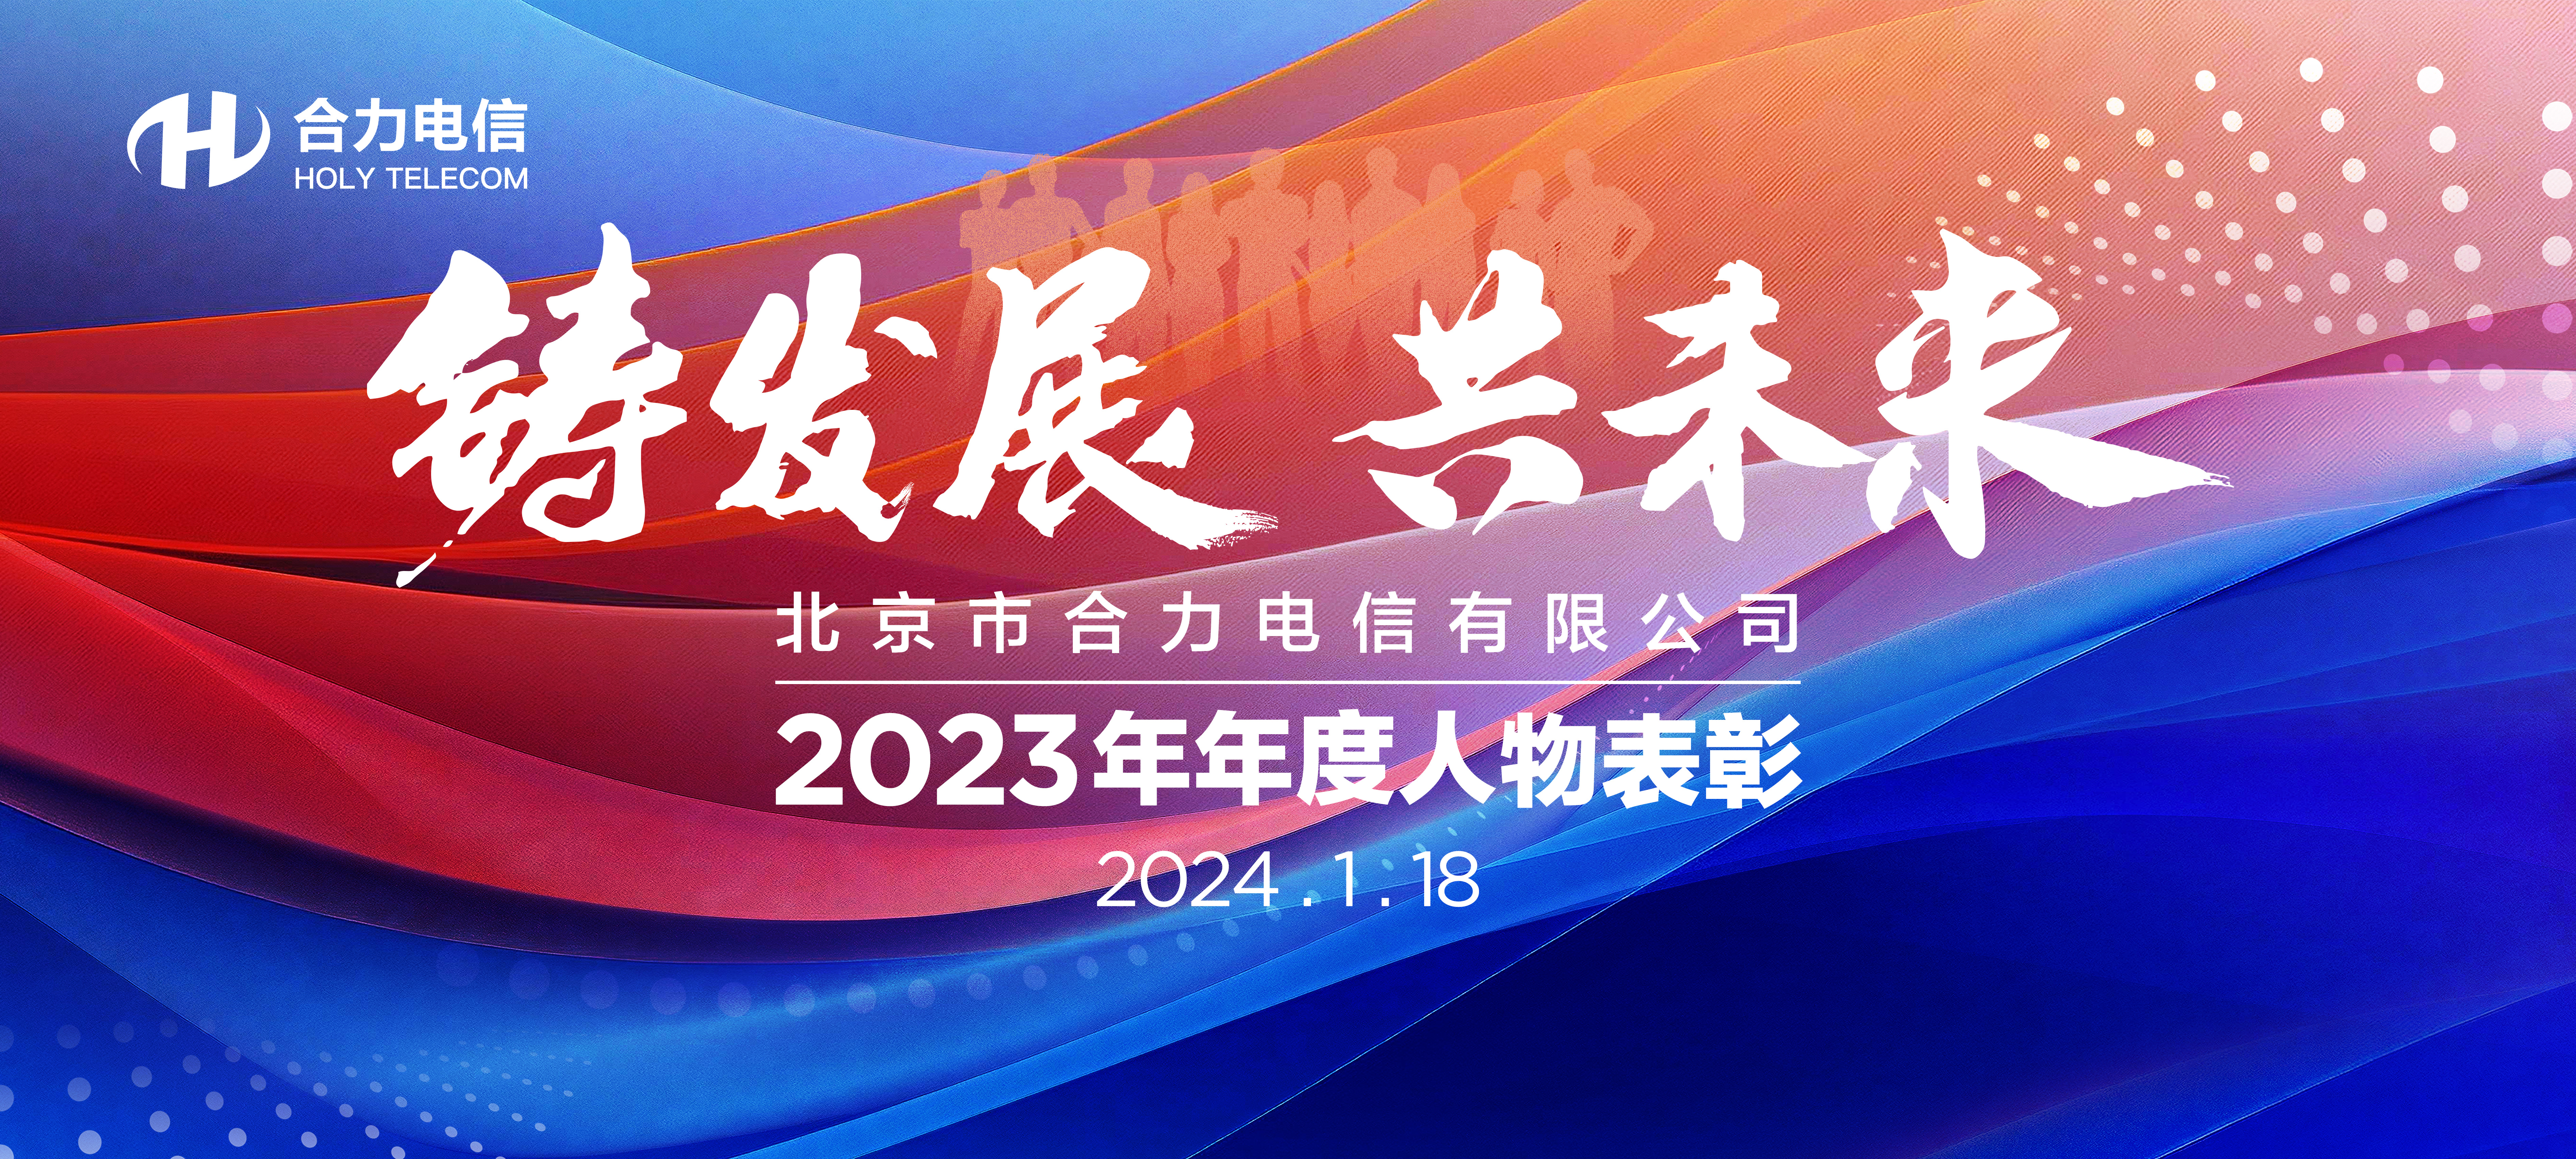 铸发展  共未来—— 公司召开2023年年度人物表彰暨2024年新春团拜会